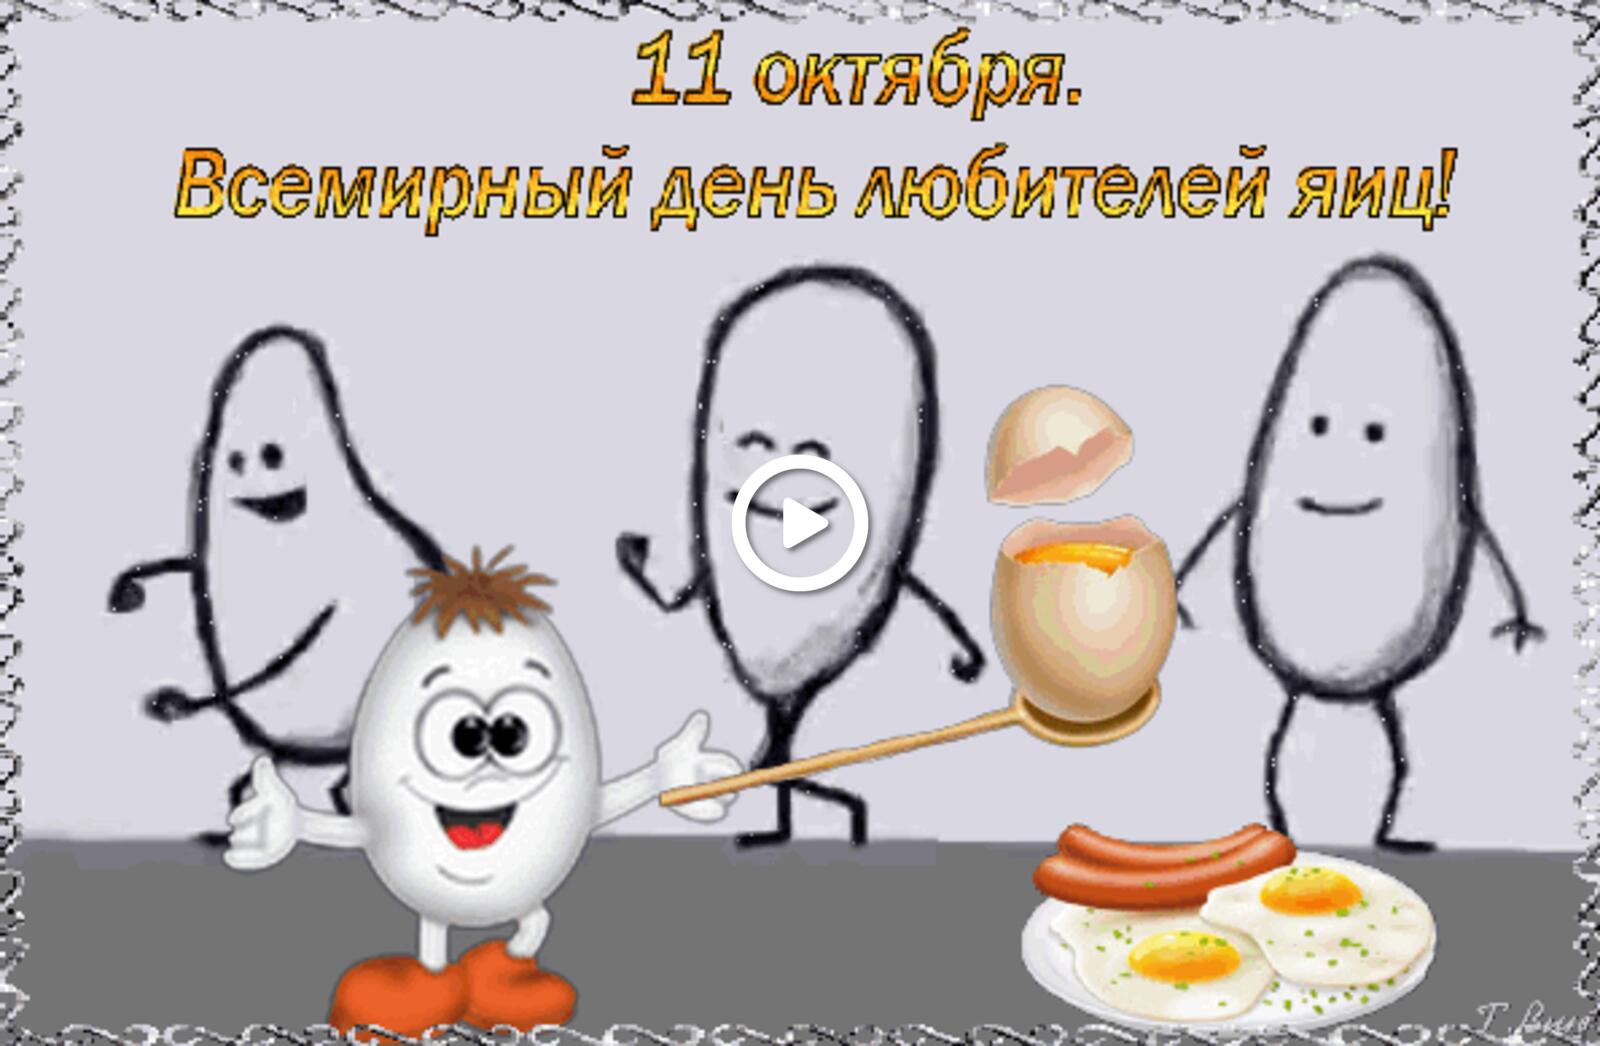 Открытка на тему всемирный день яйца праздники еда бесплатно